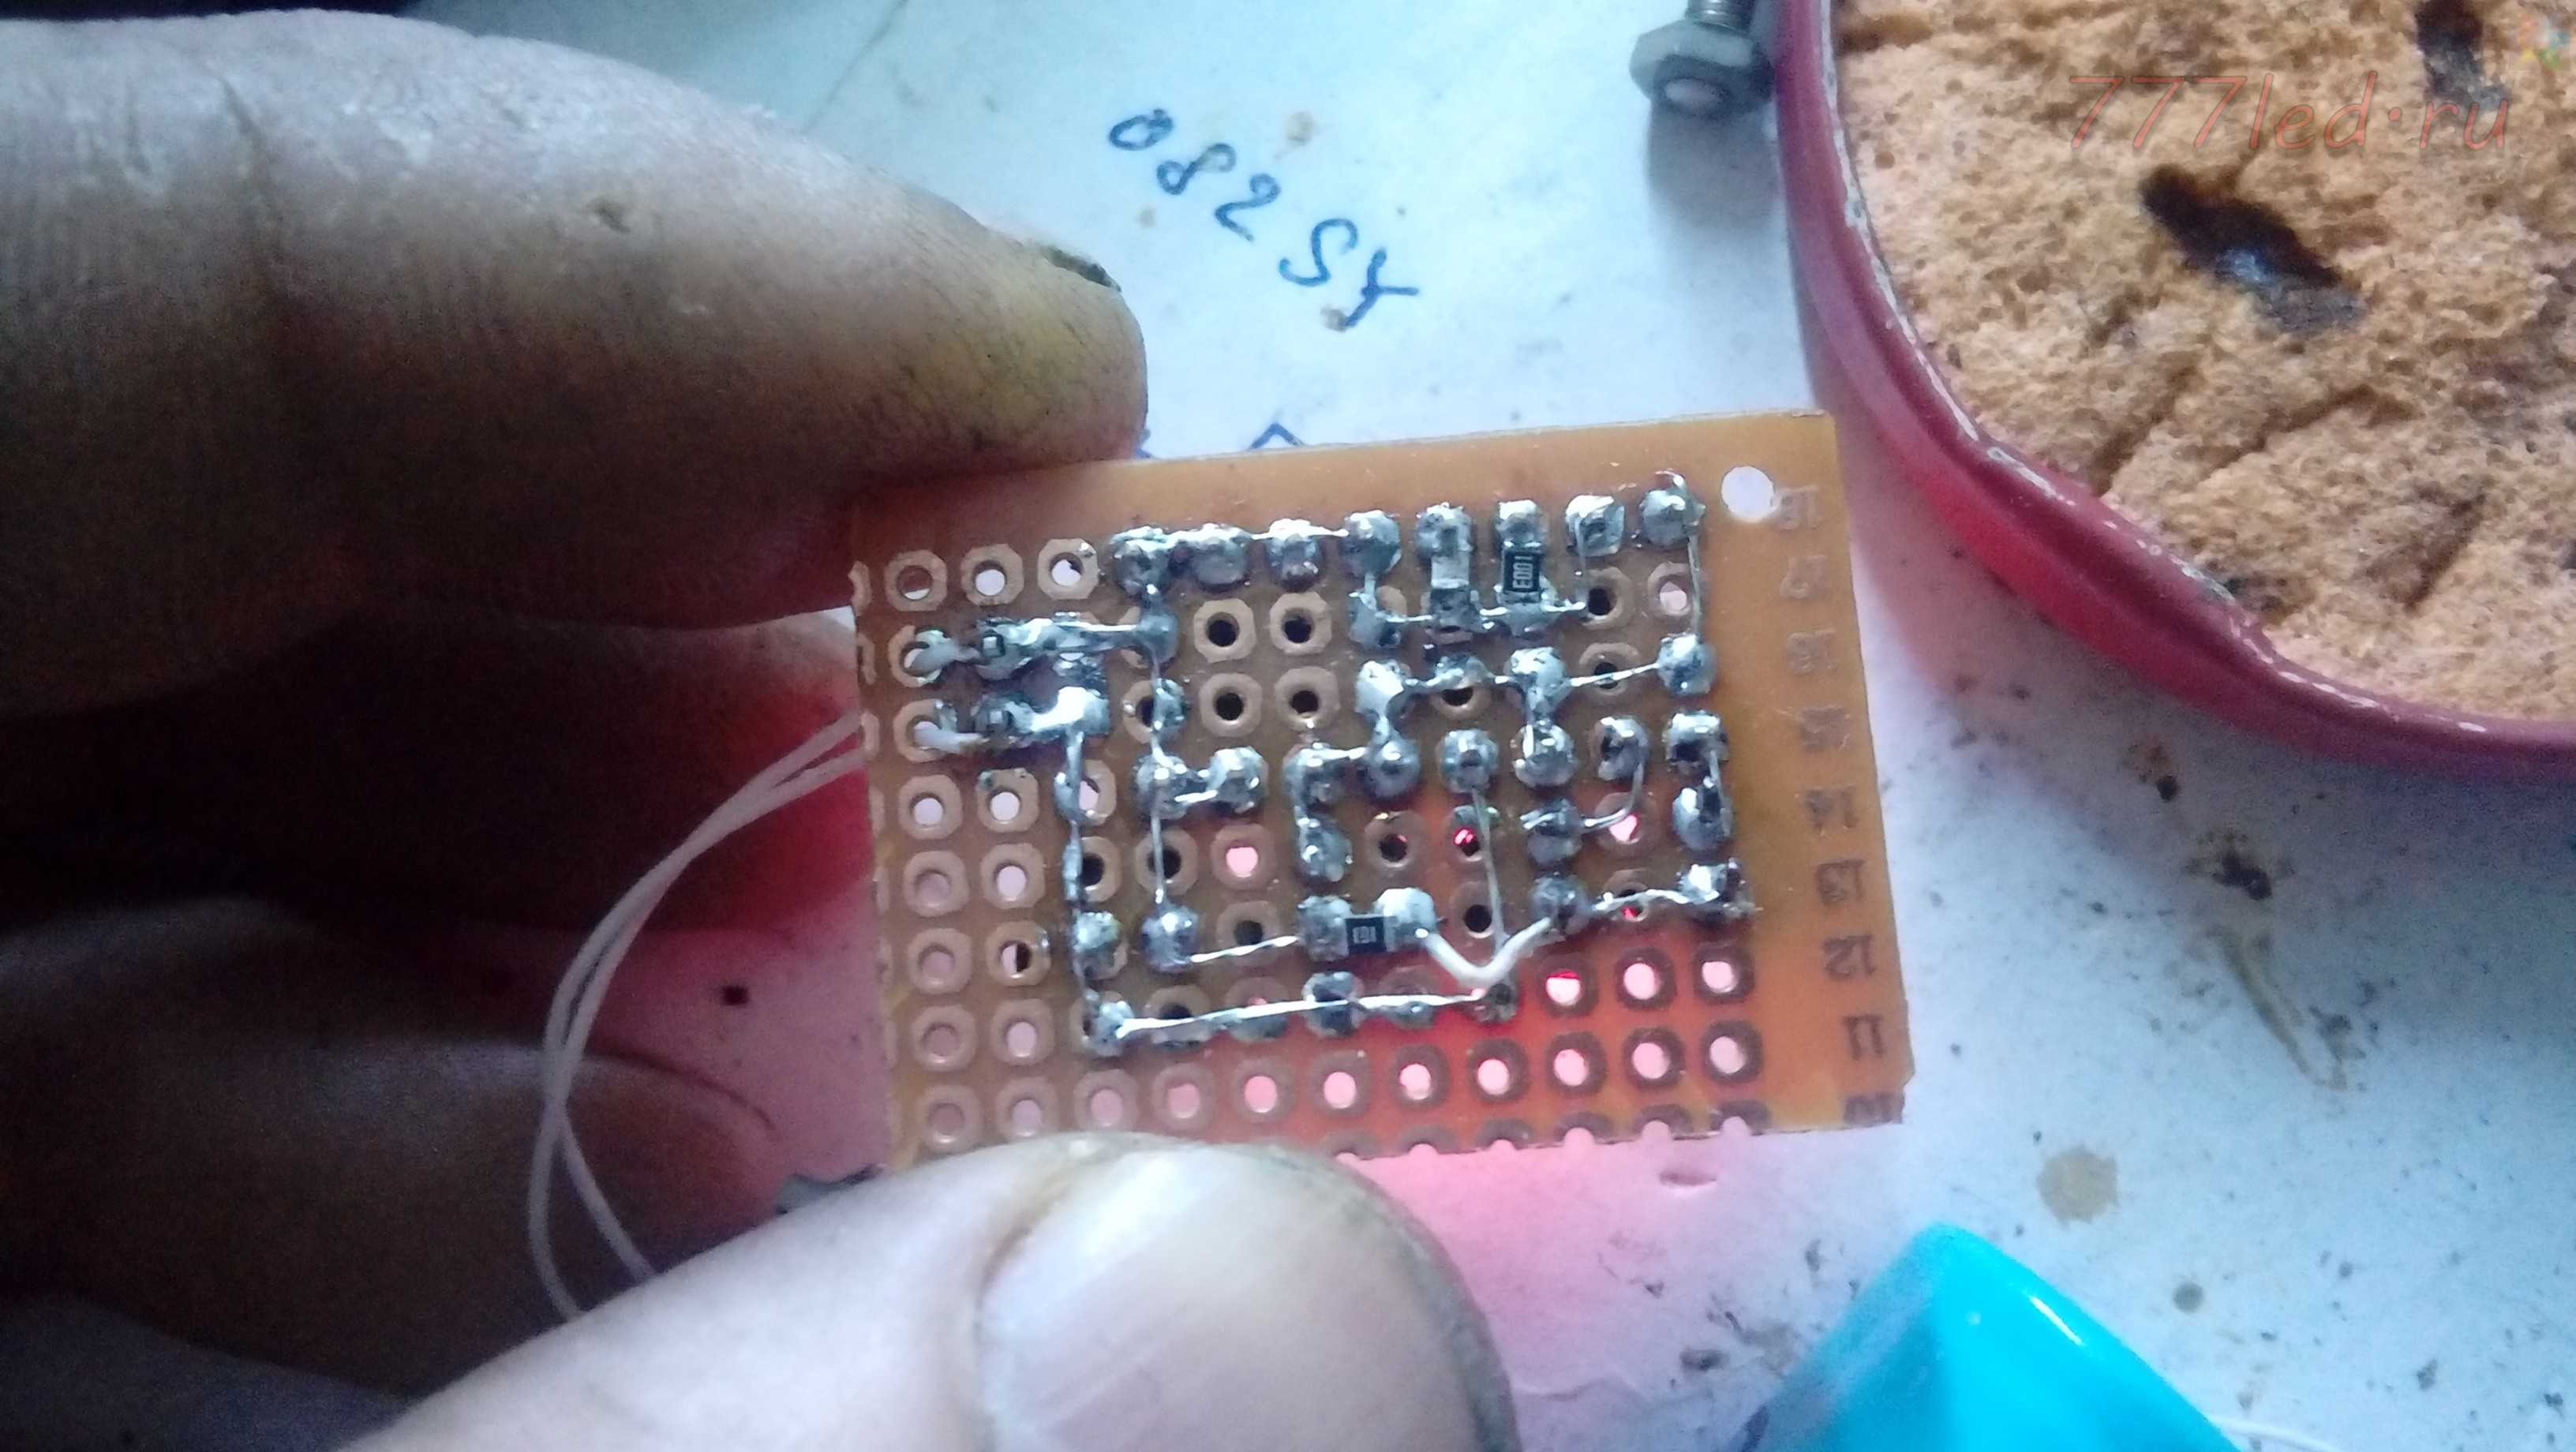 Как подключить rgb светодиод на arduino